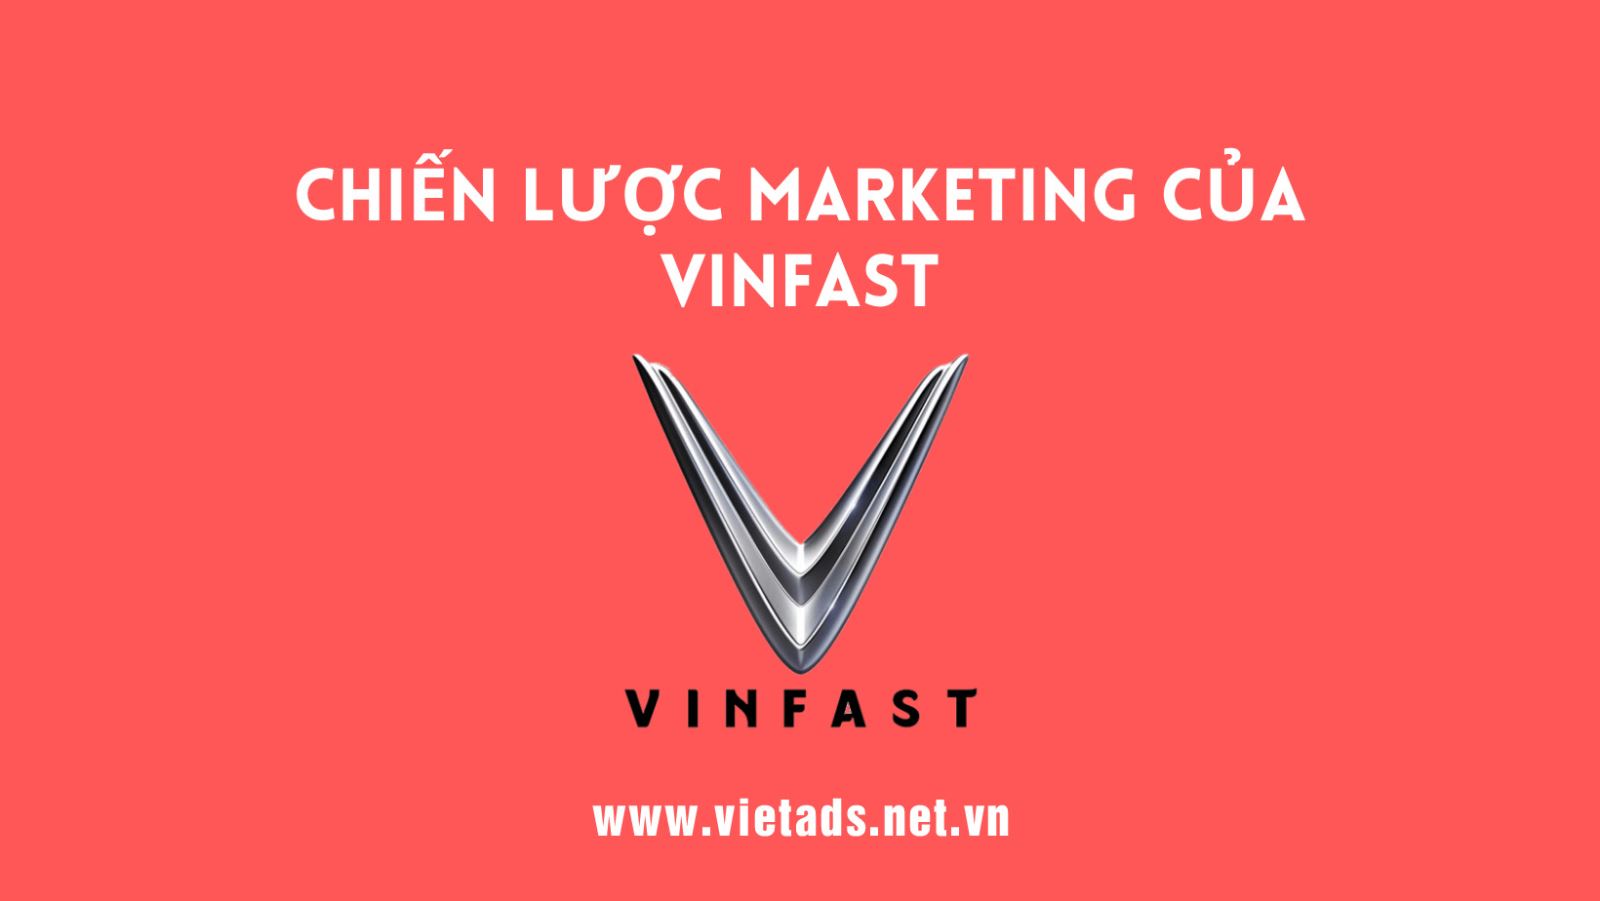 Chiến lược Marketing đỉnh cao của VinFast giúp hãng thành công trong việc nắm bắt tâm lý khách hàng